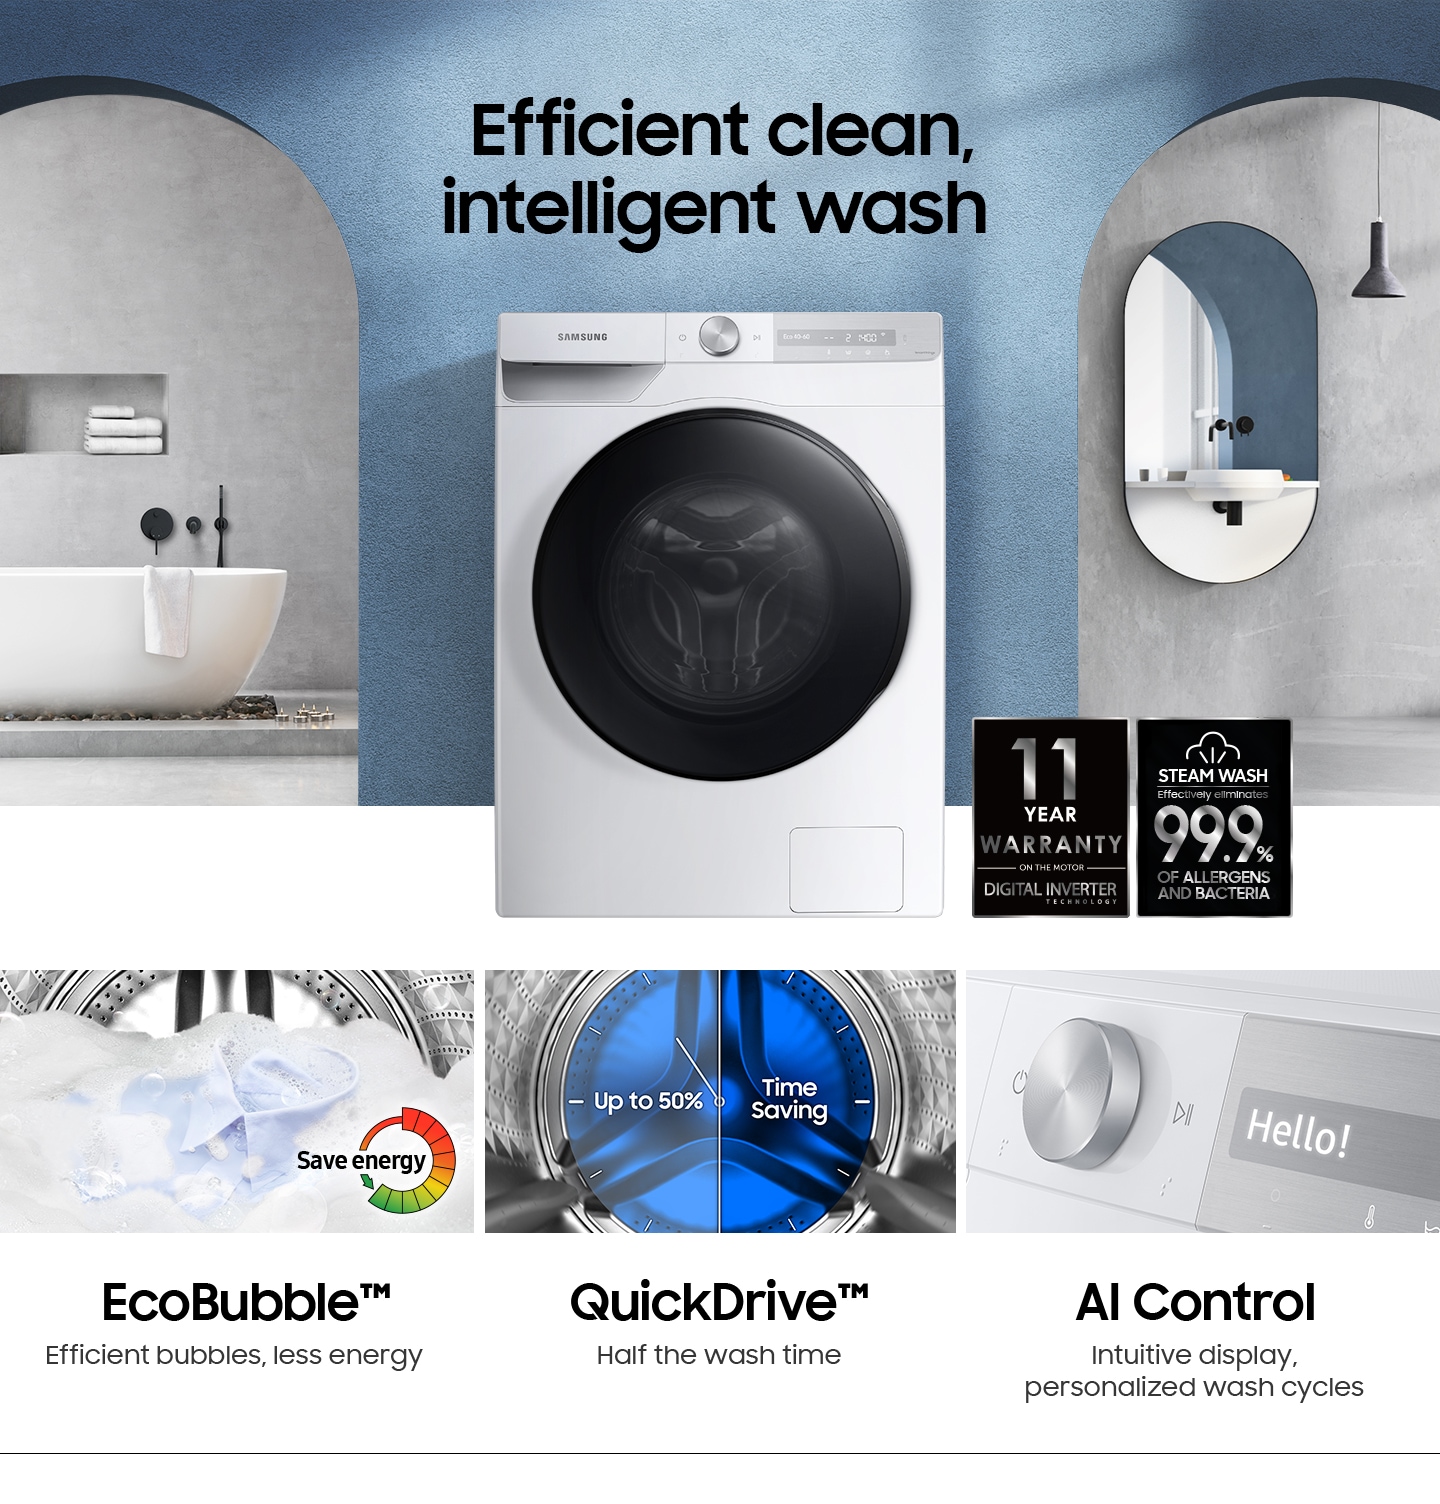 Description: Efficient clean, intelligent wash.